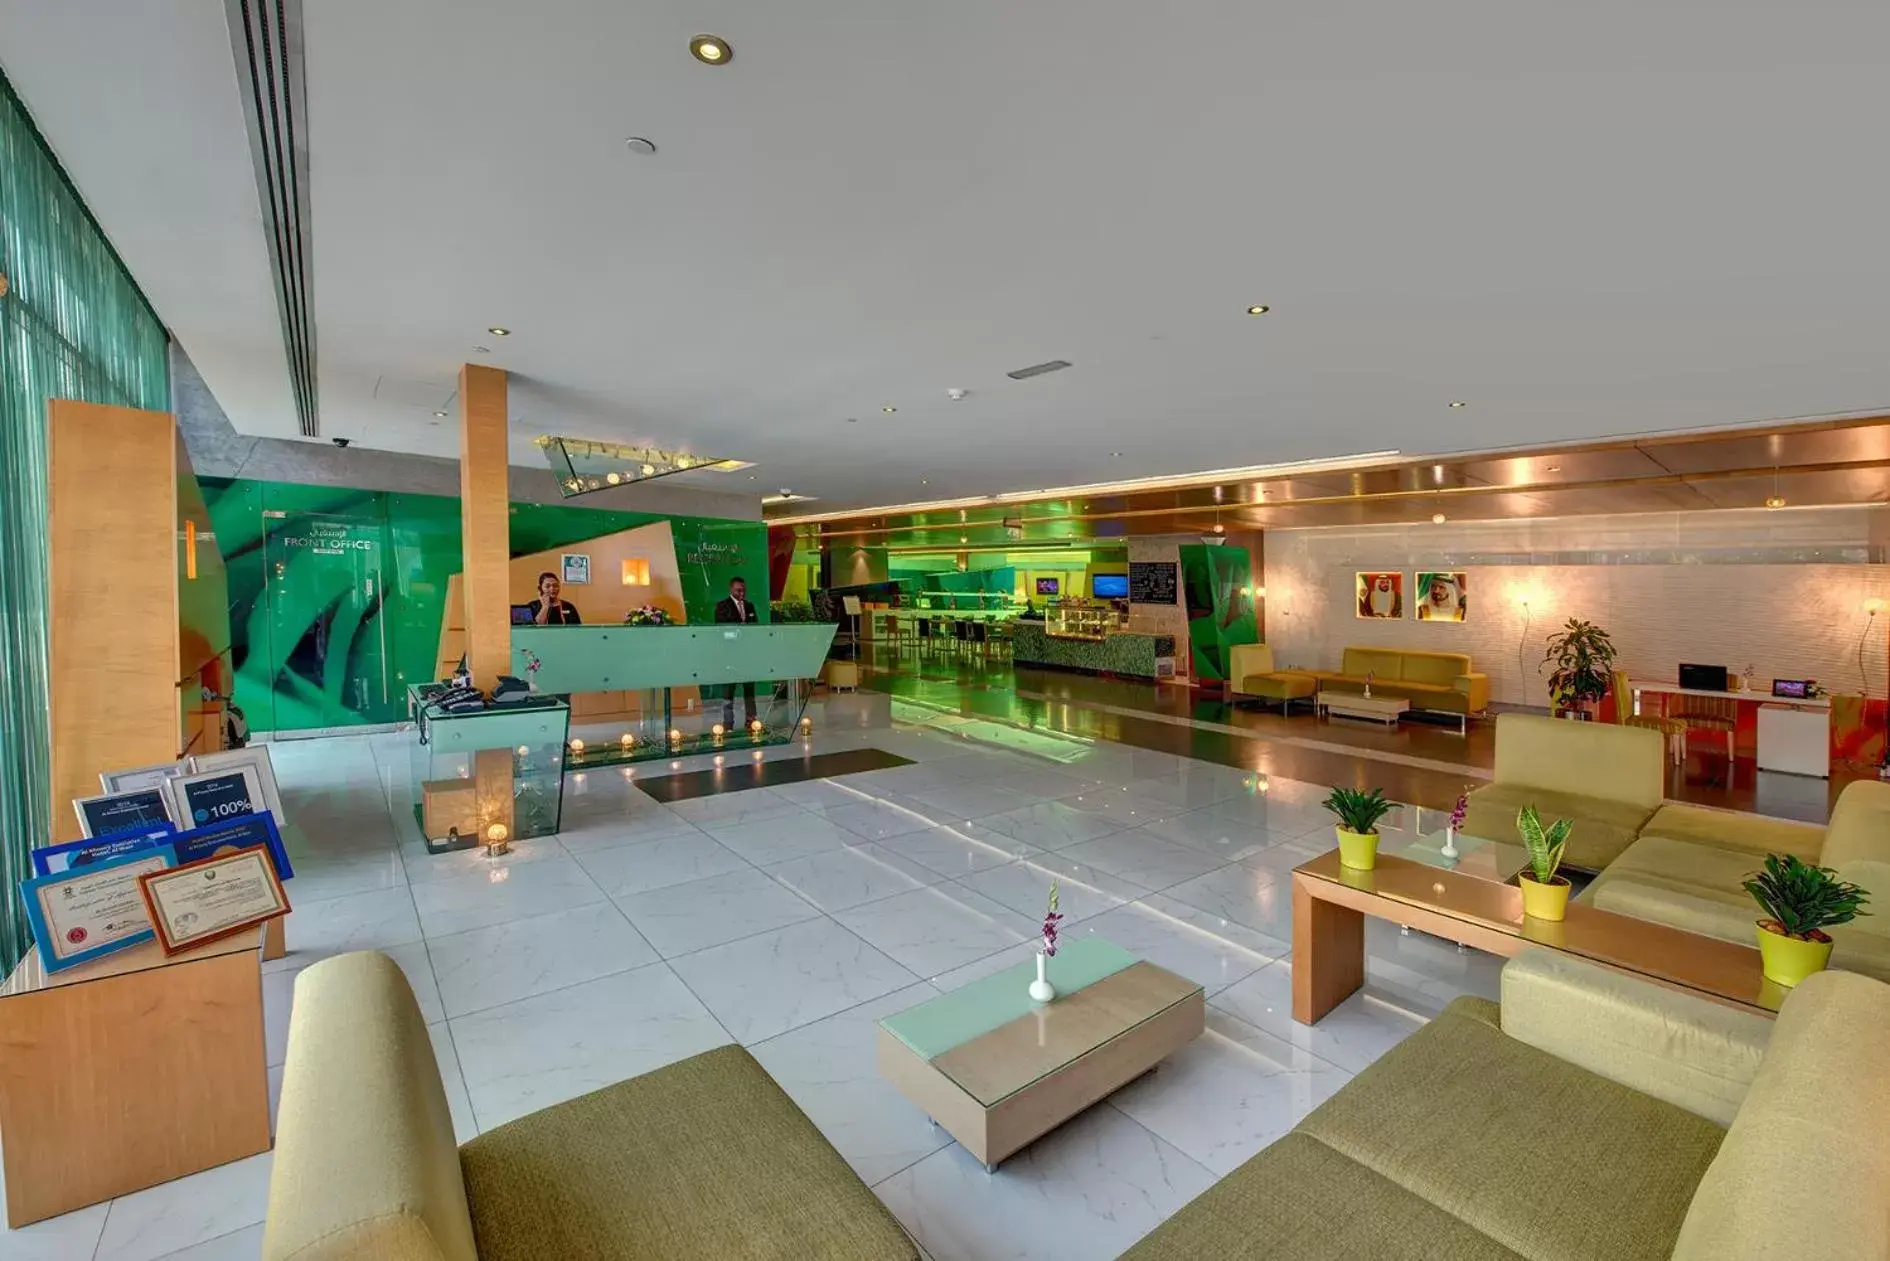 Lobby or reception in Al Khoory Executive Hotel, Al Wasl